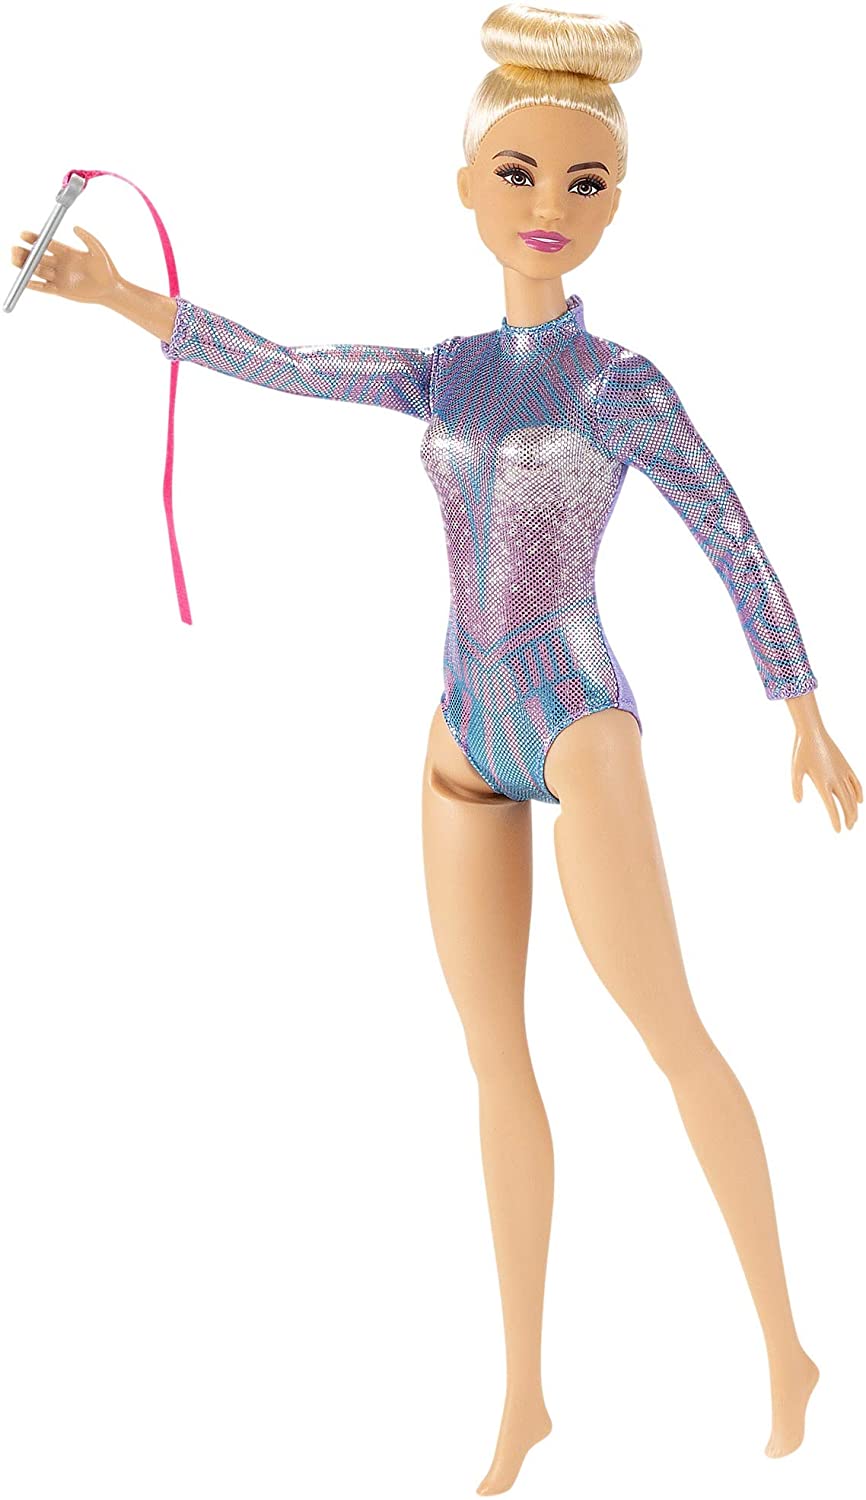 Barbie Rhythmic Gymnast